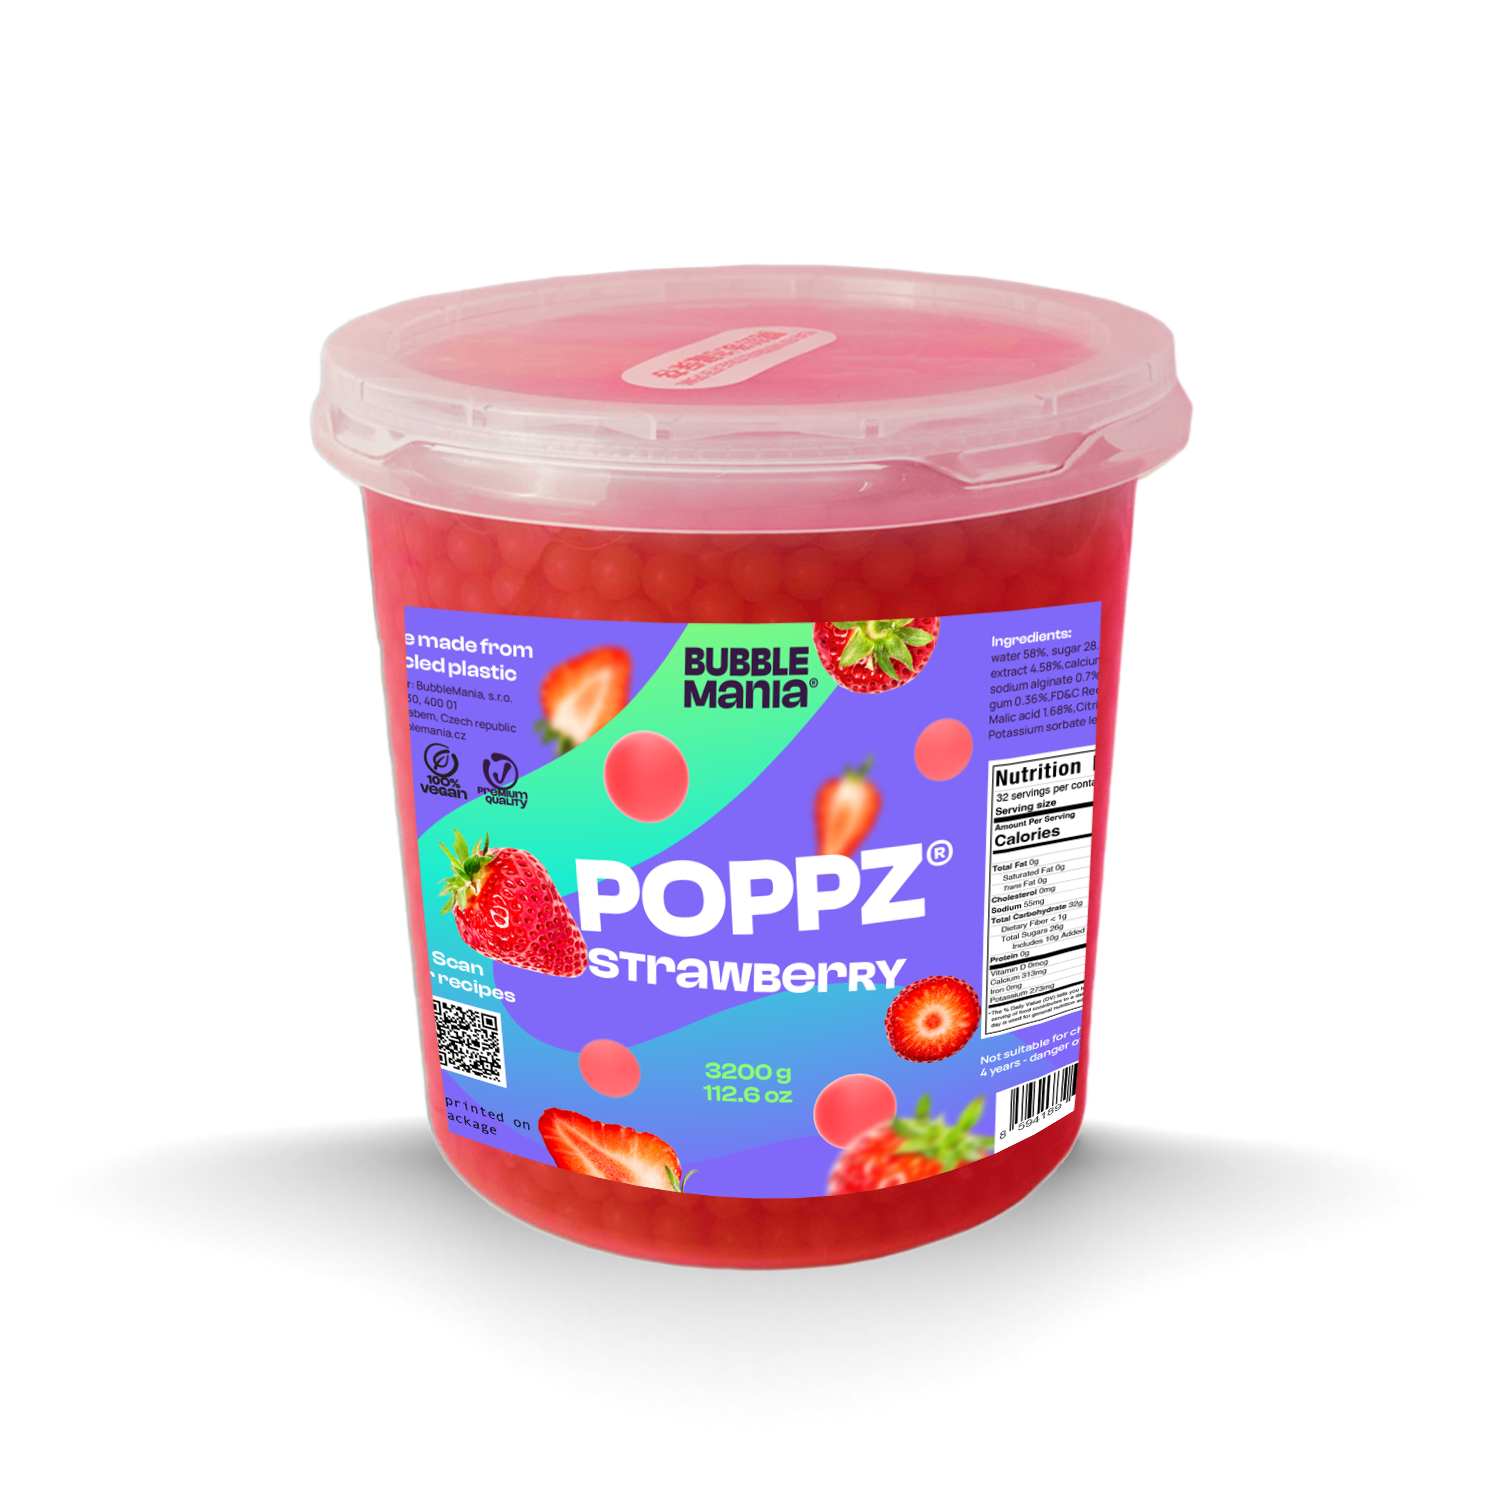 POPPZ Strawberry Kit with Tapioca scoop and 10 straws